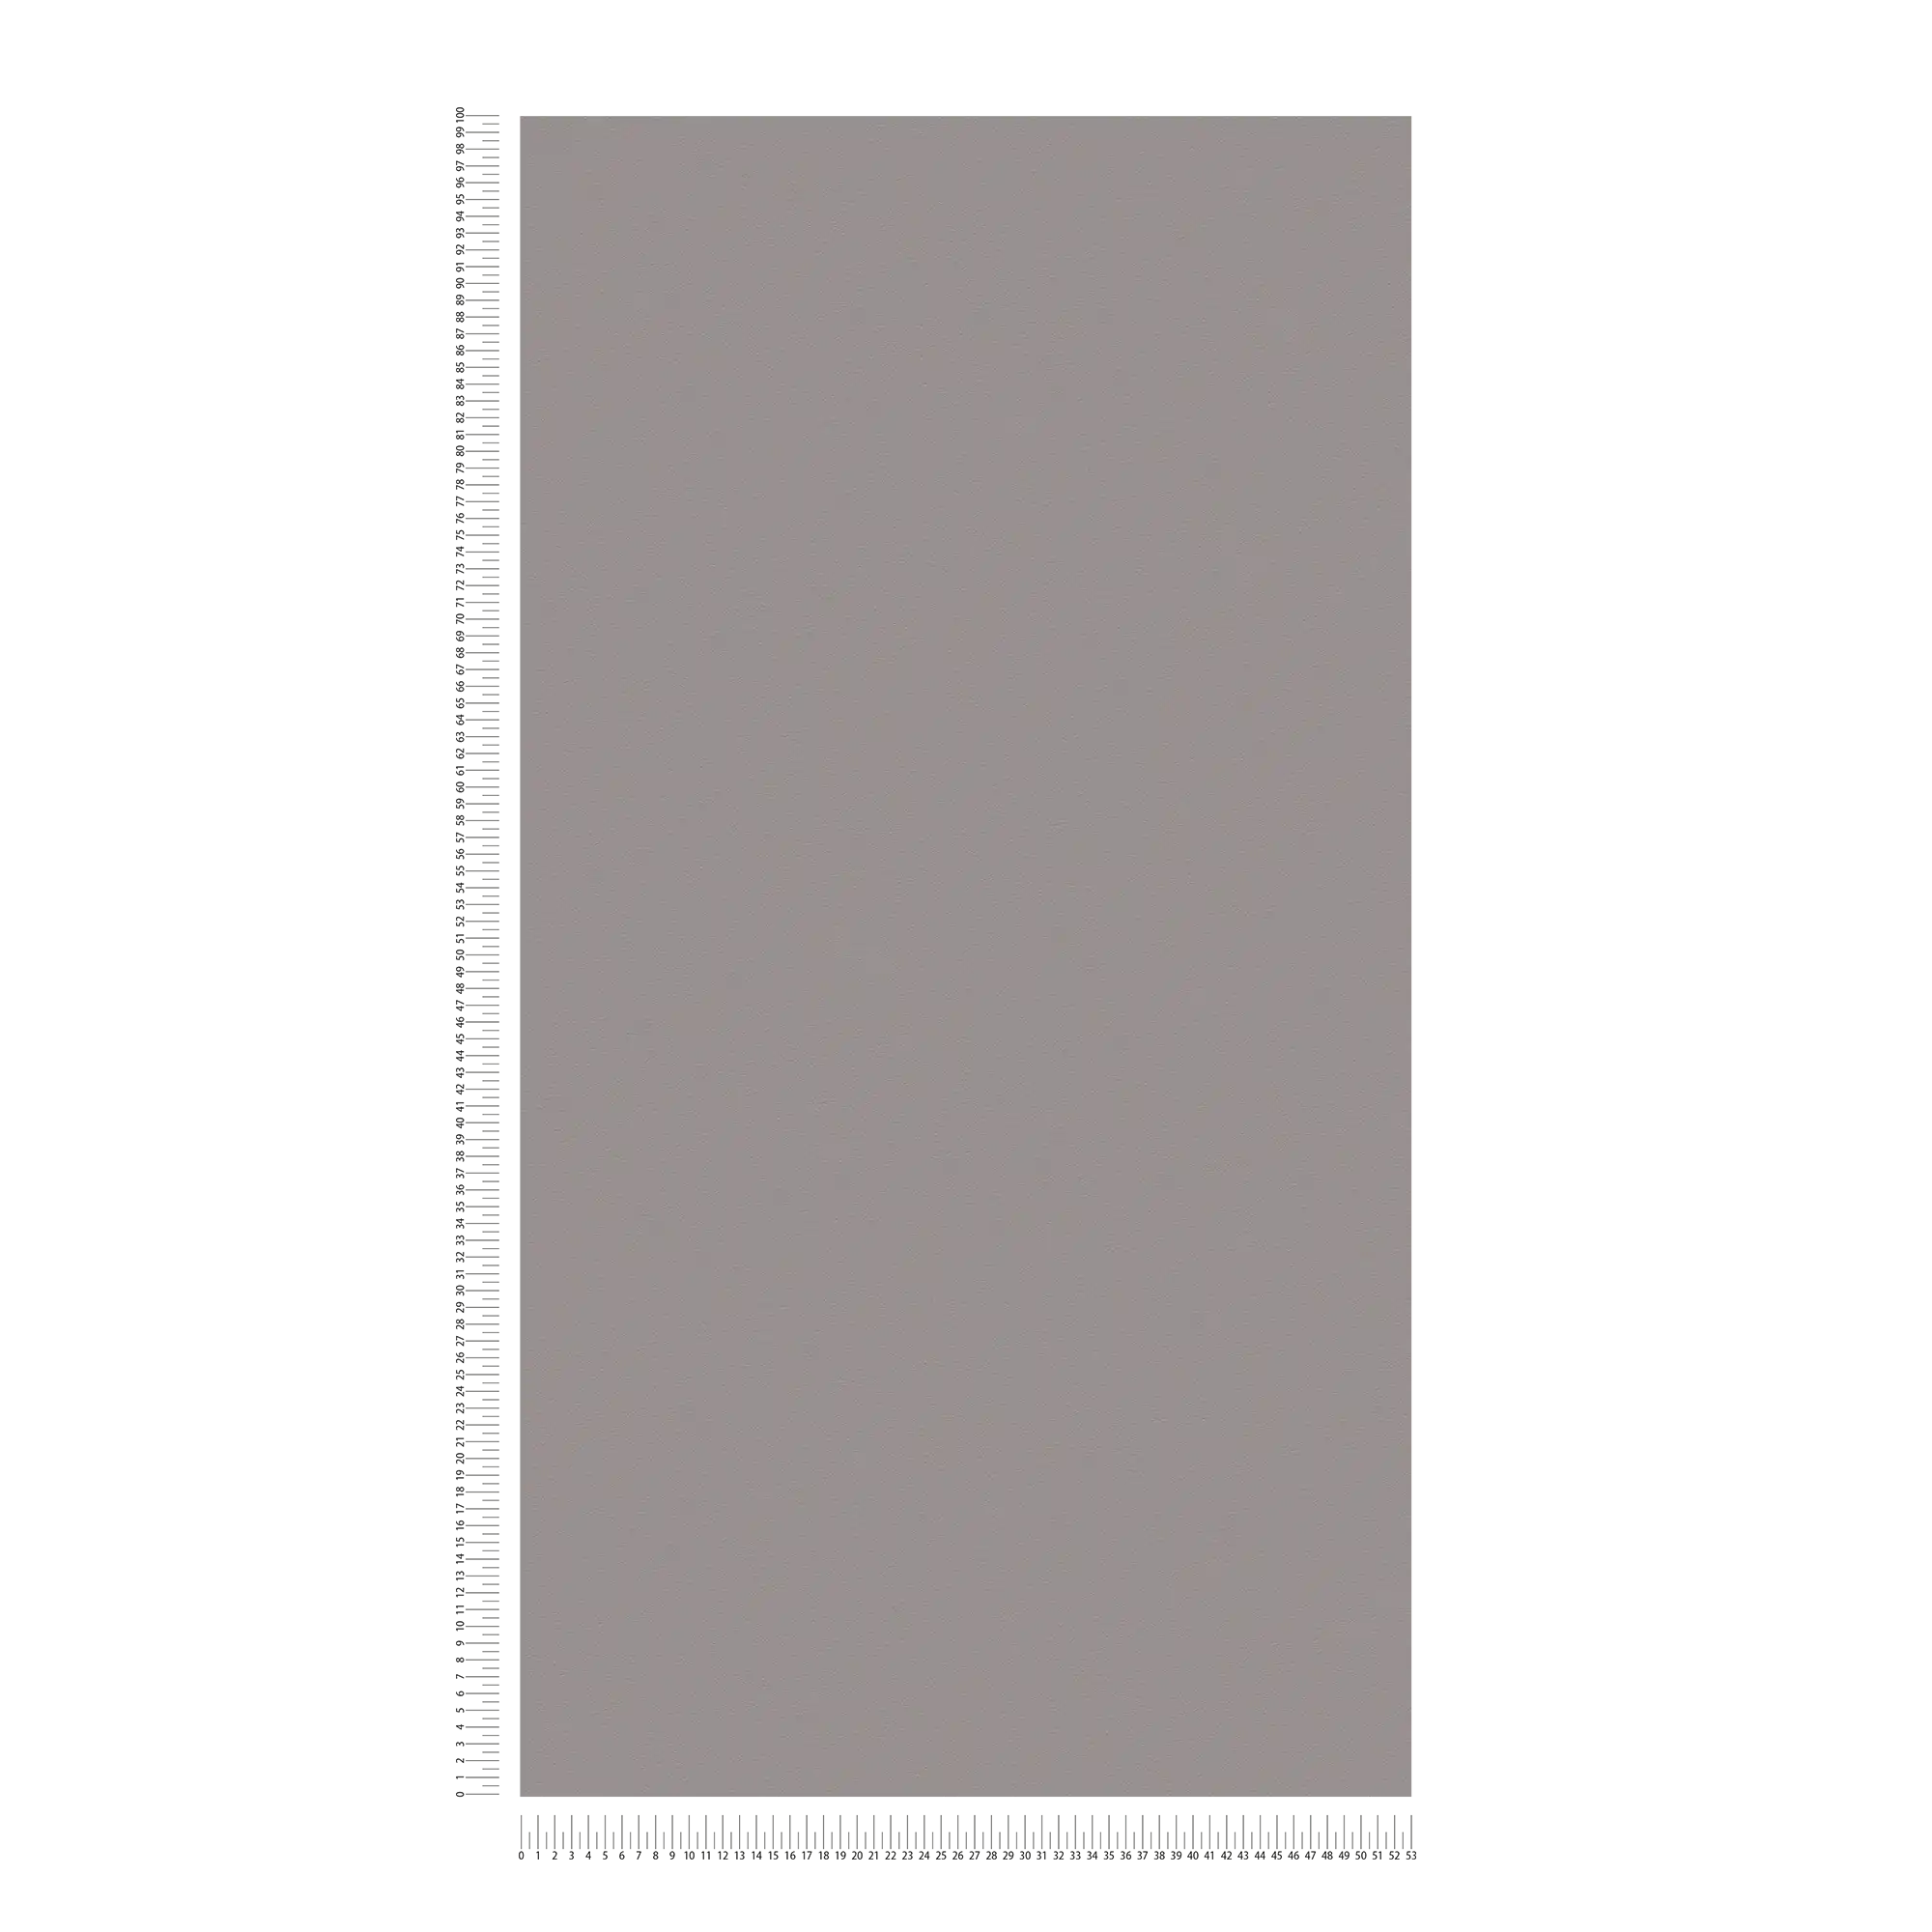             Vliesbehang donkergrijs met glad oppervlak - grijs
        